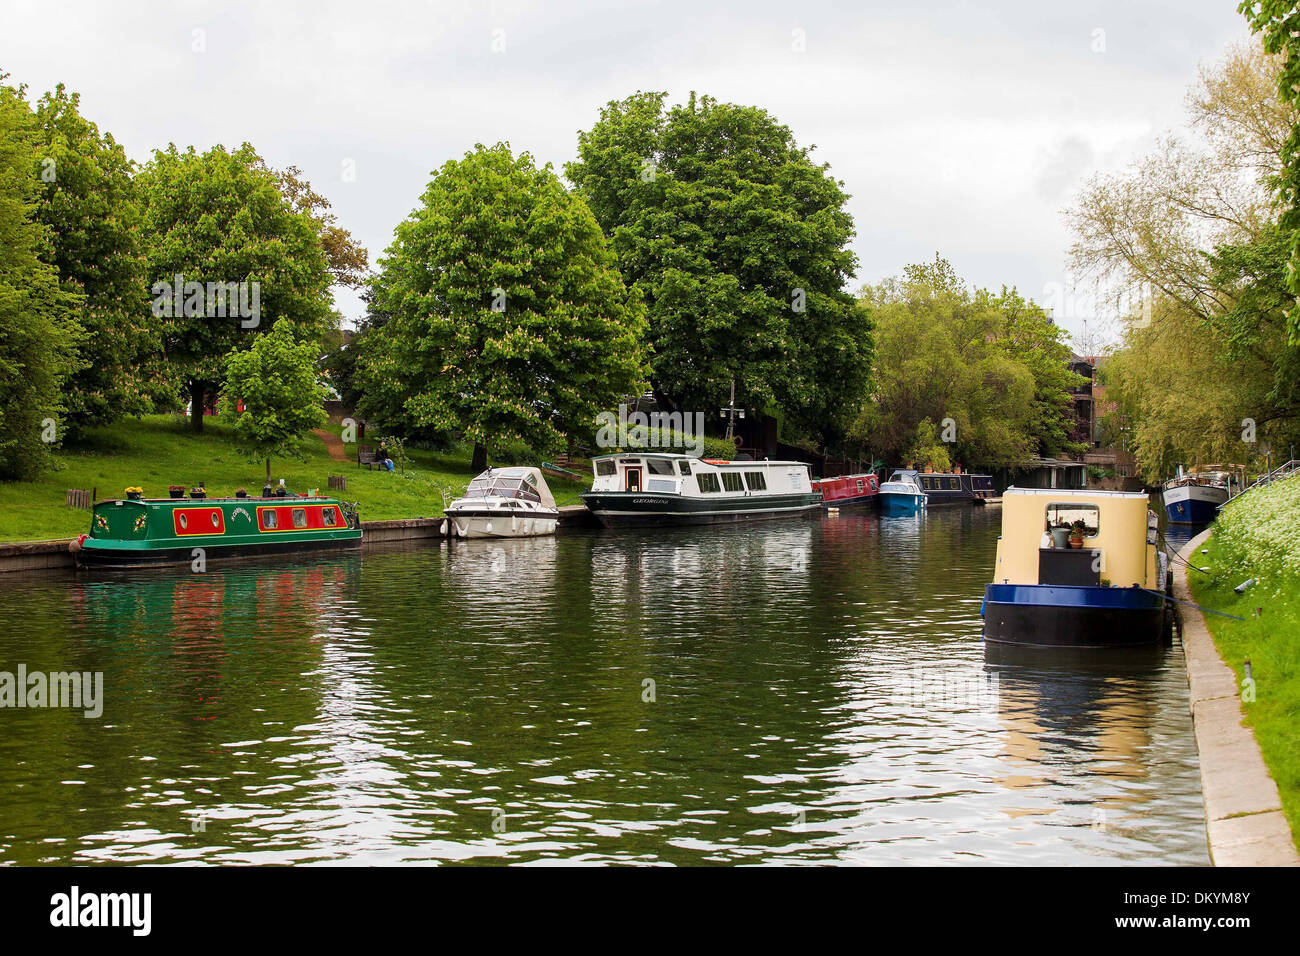 GV de bateaux sur la rivière Cam à Cambridge. Banque D'Images